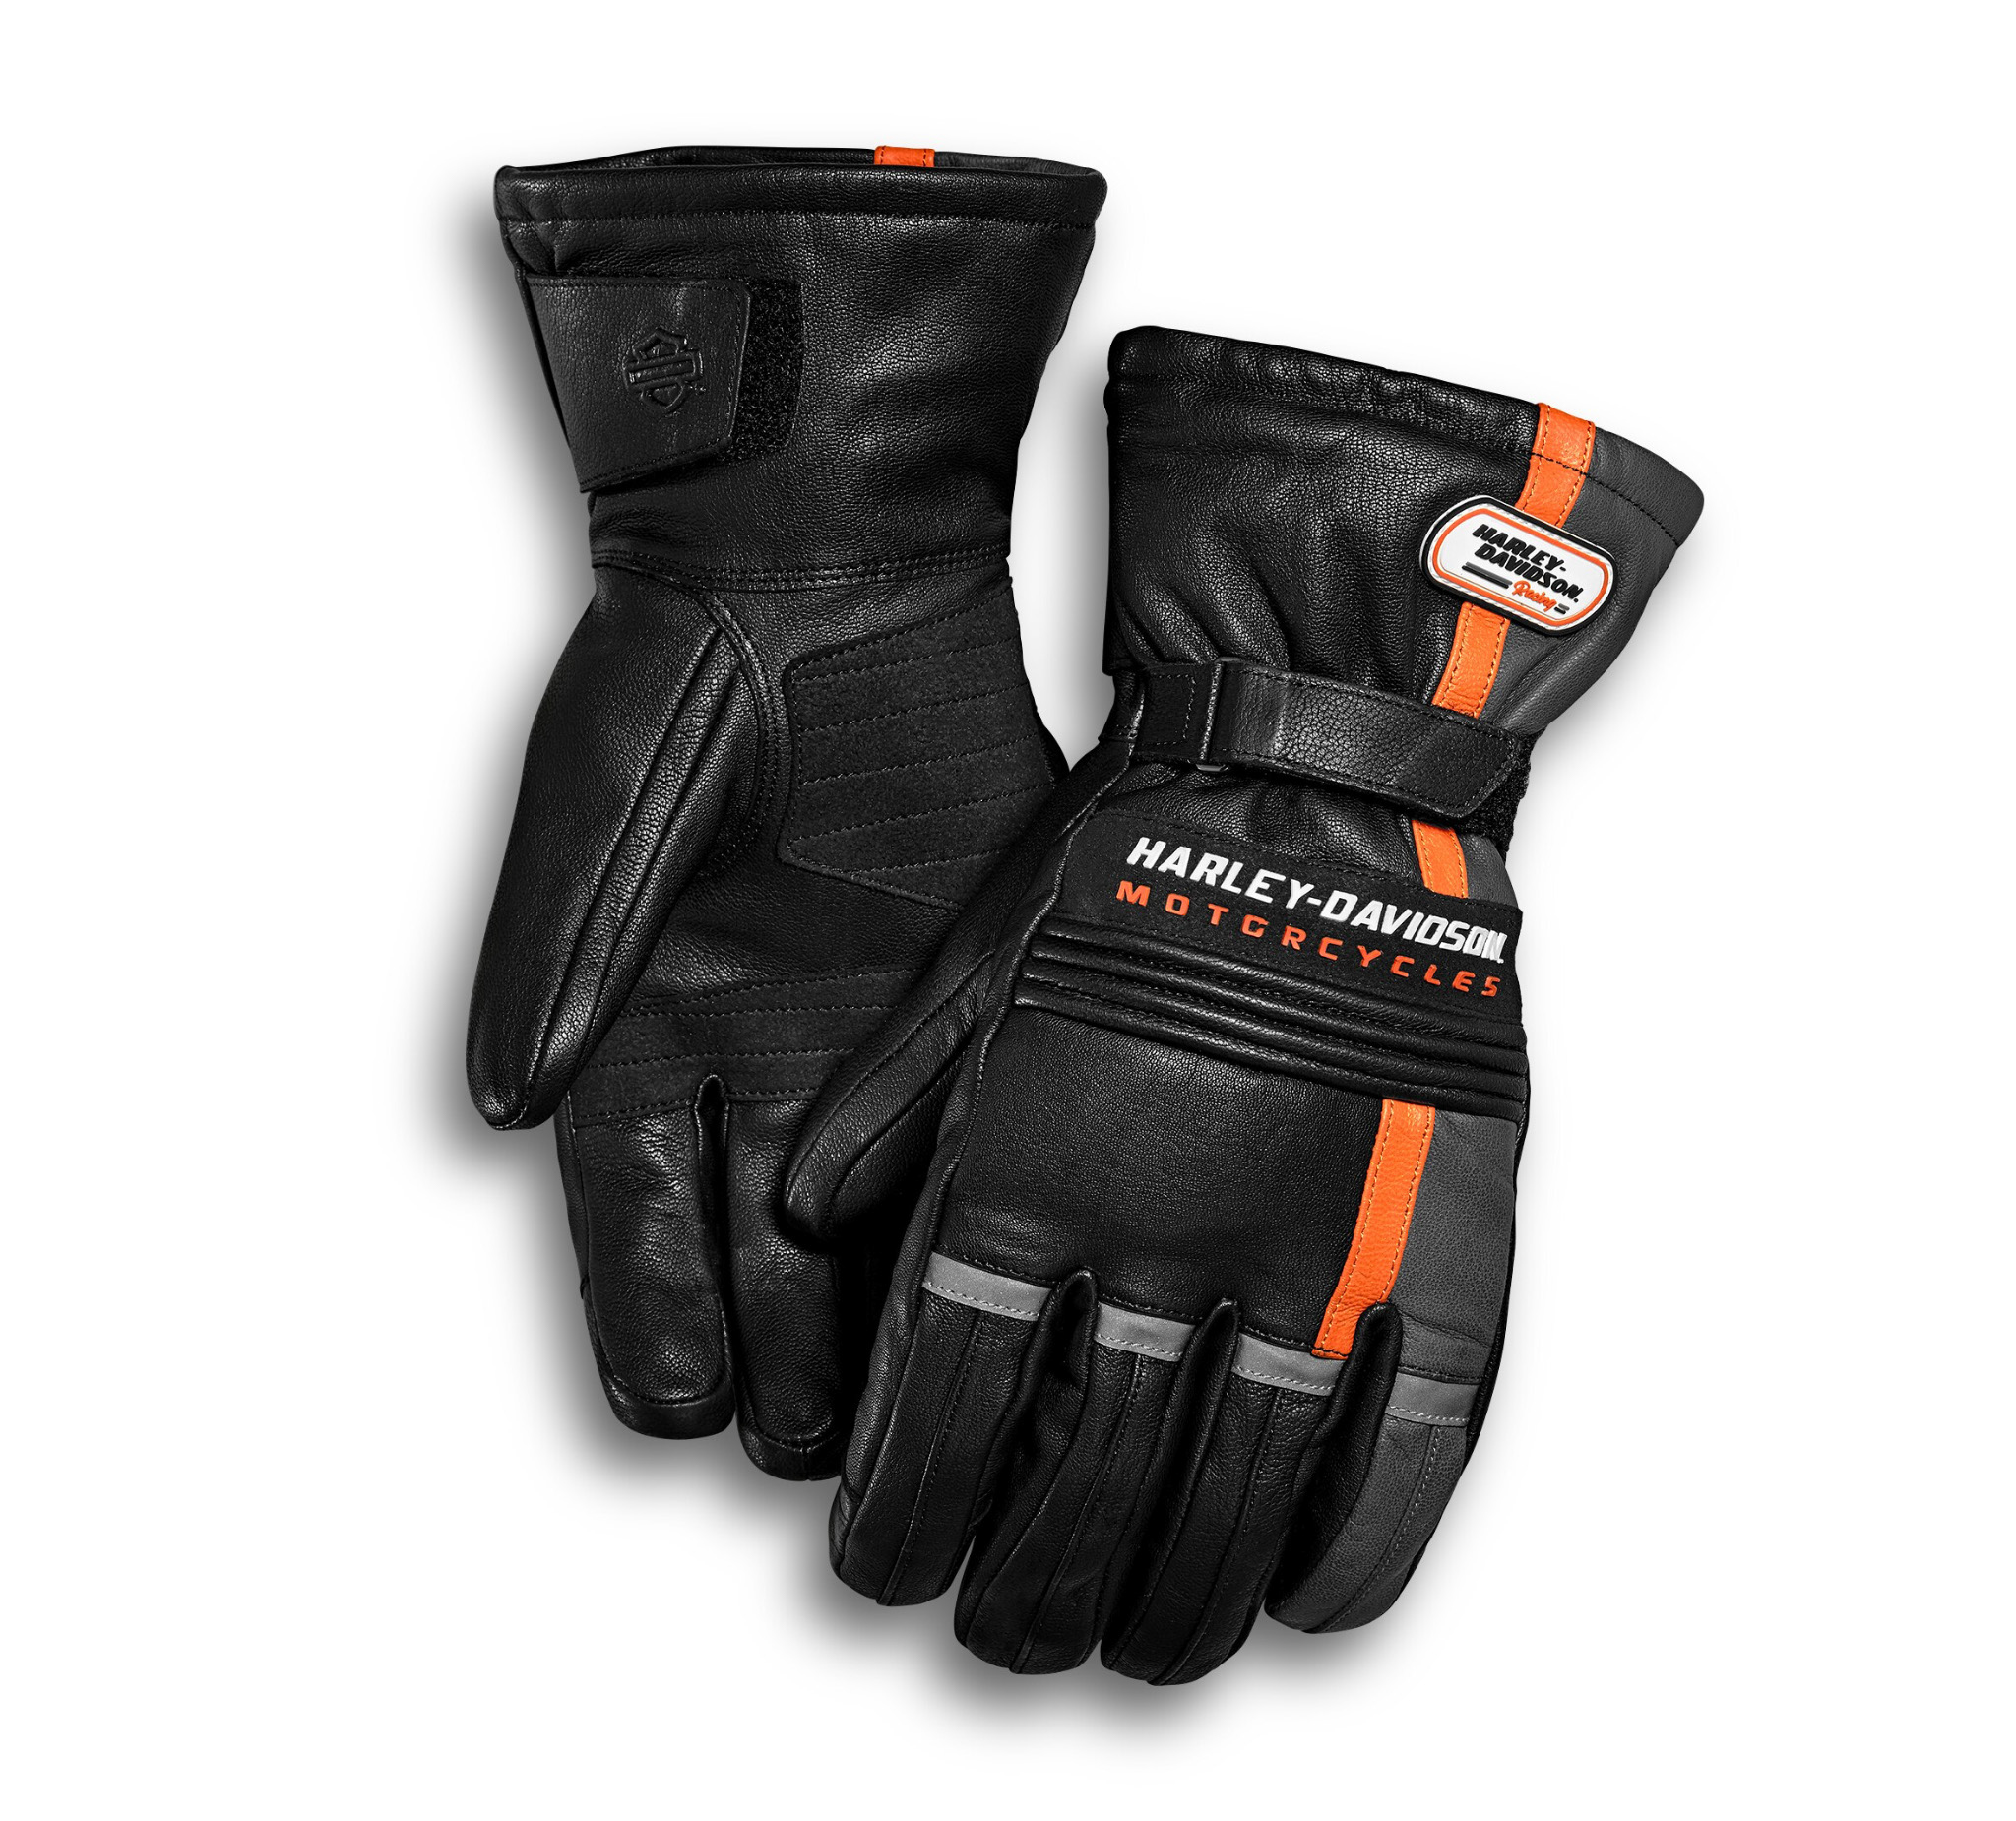 Harley Davidson Gauntlet Gloves Promotions